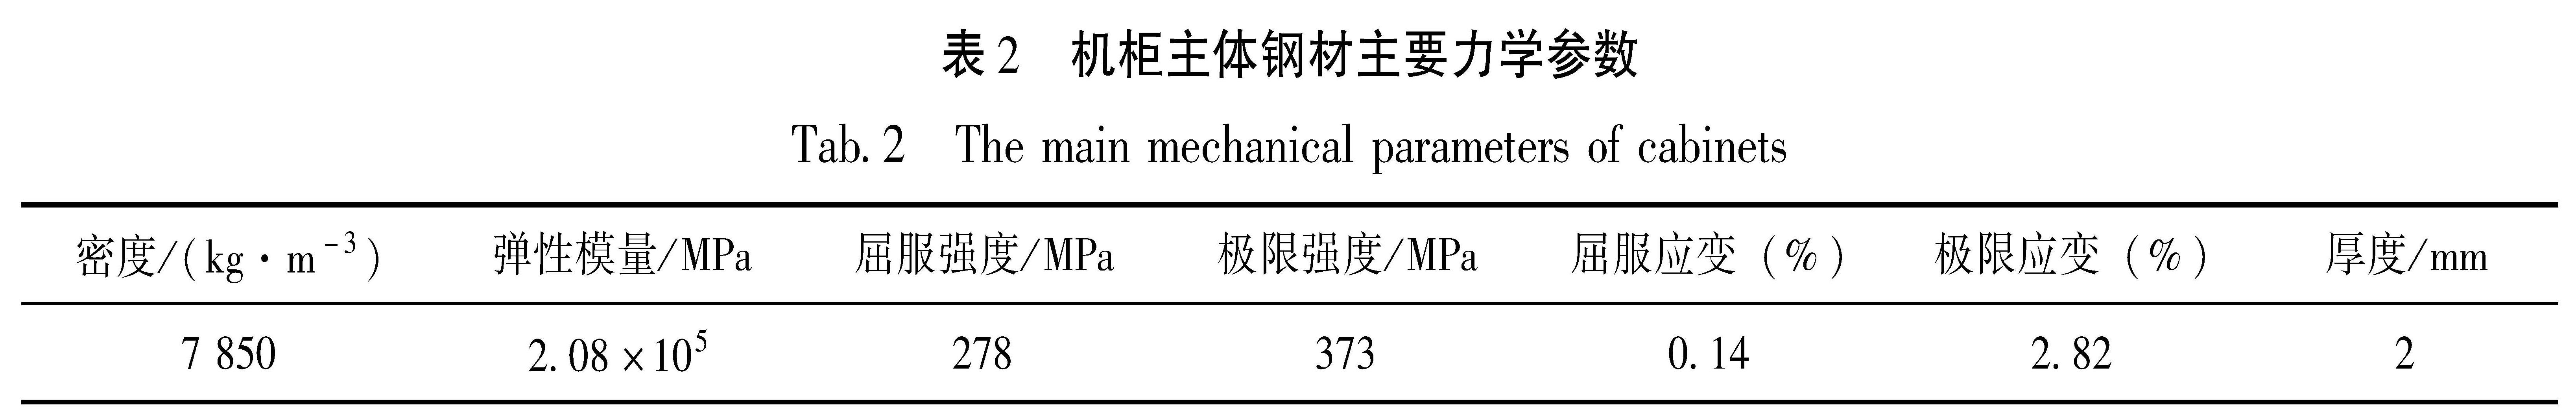 表2 机柜主体钢材主要力学参数<br/>Tab.2 The main mechanical parameters of cabinets